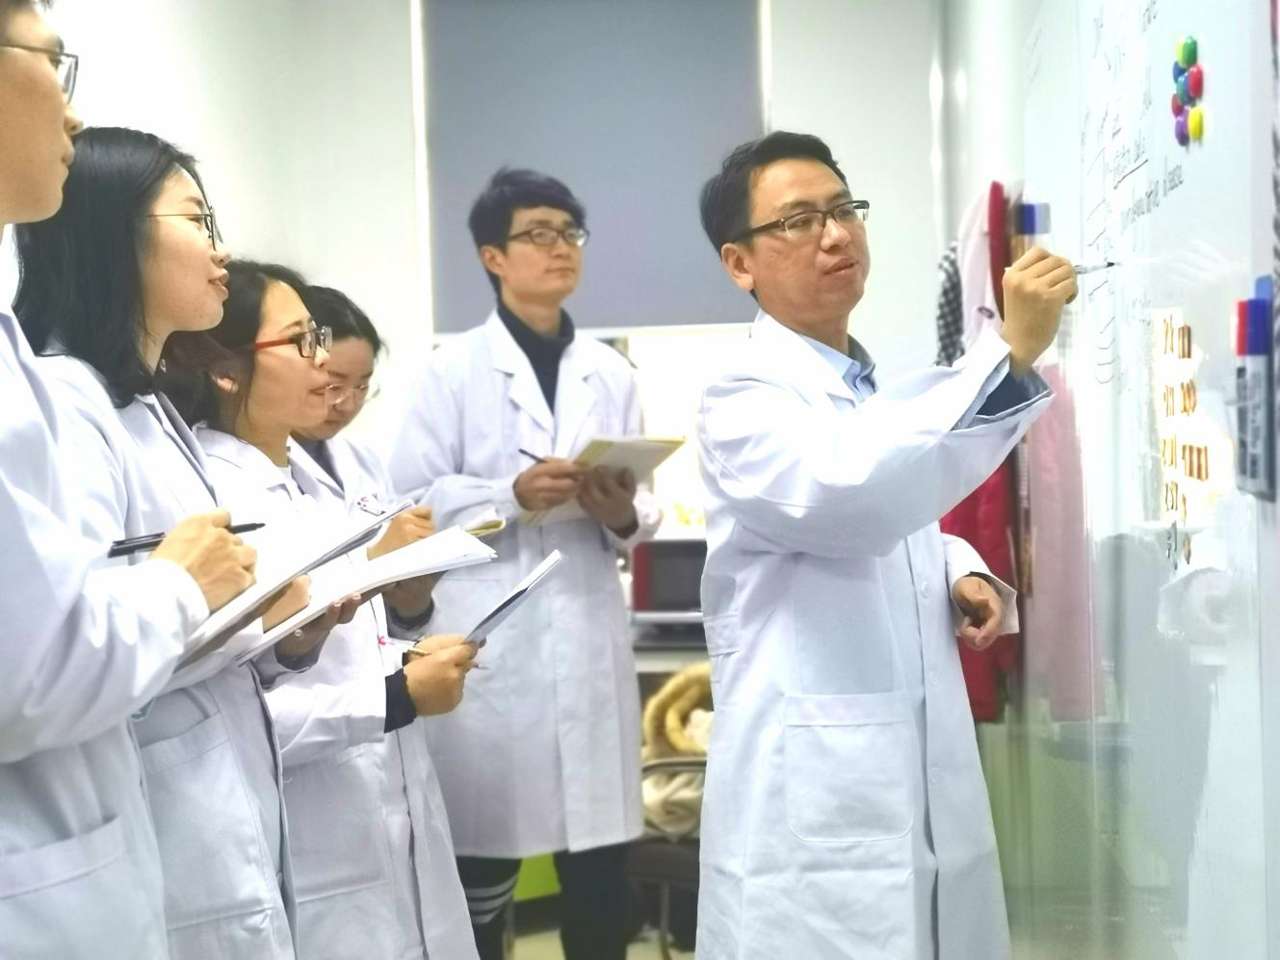 武汉科技大学姚凯团队攻克神经性失明世界医学难题——为失明者打开光明的眼窗